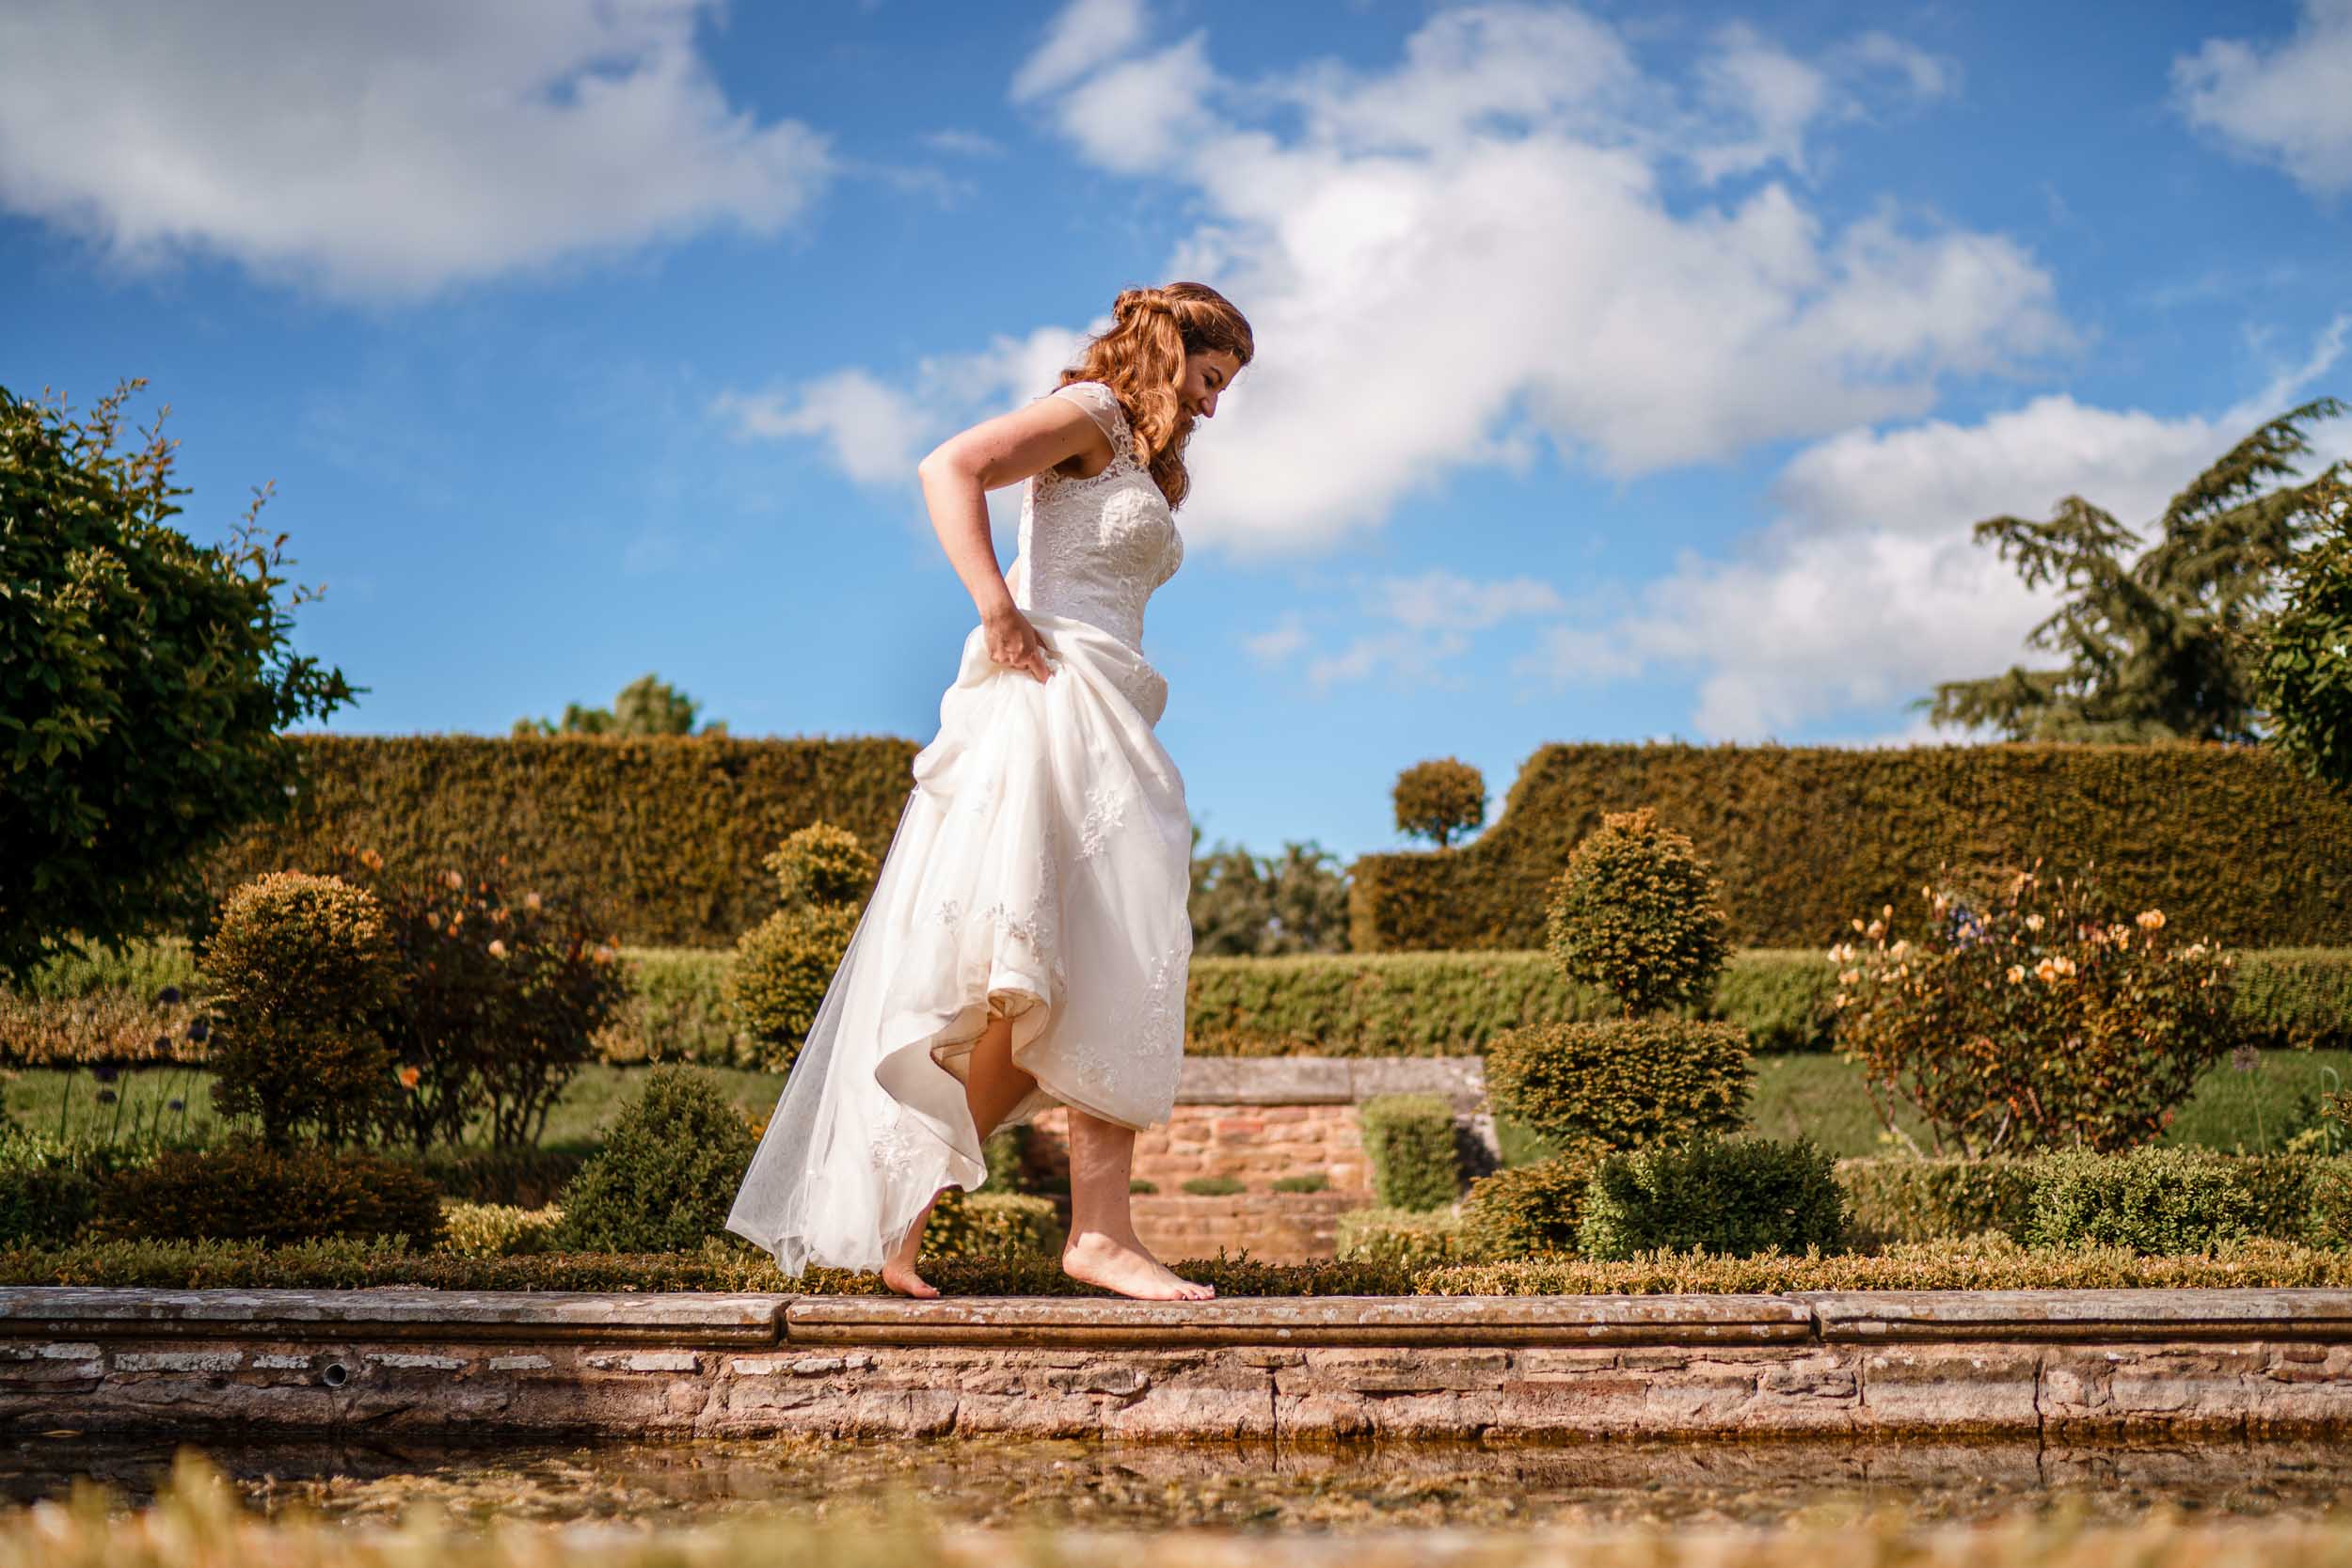 Pauntley Court Wedding Photography - Gloucestershire wedding photographer